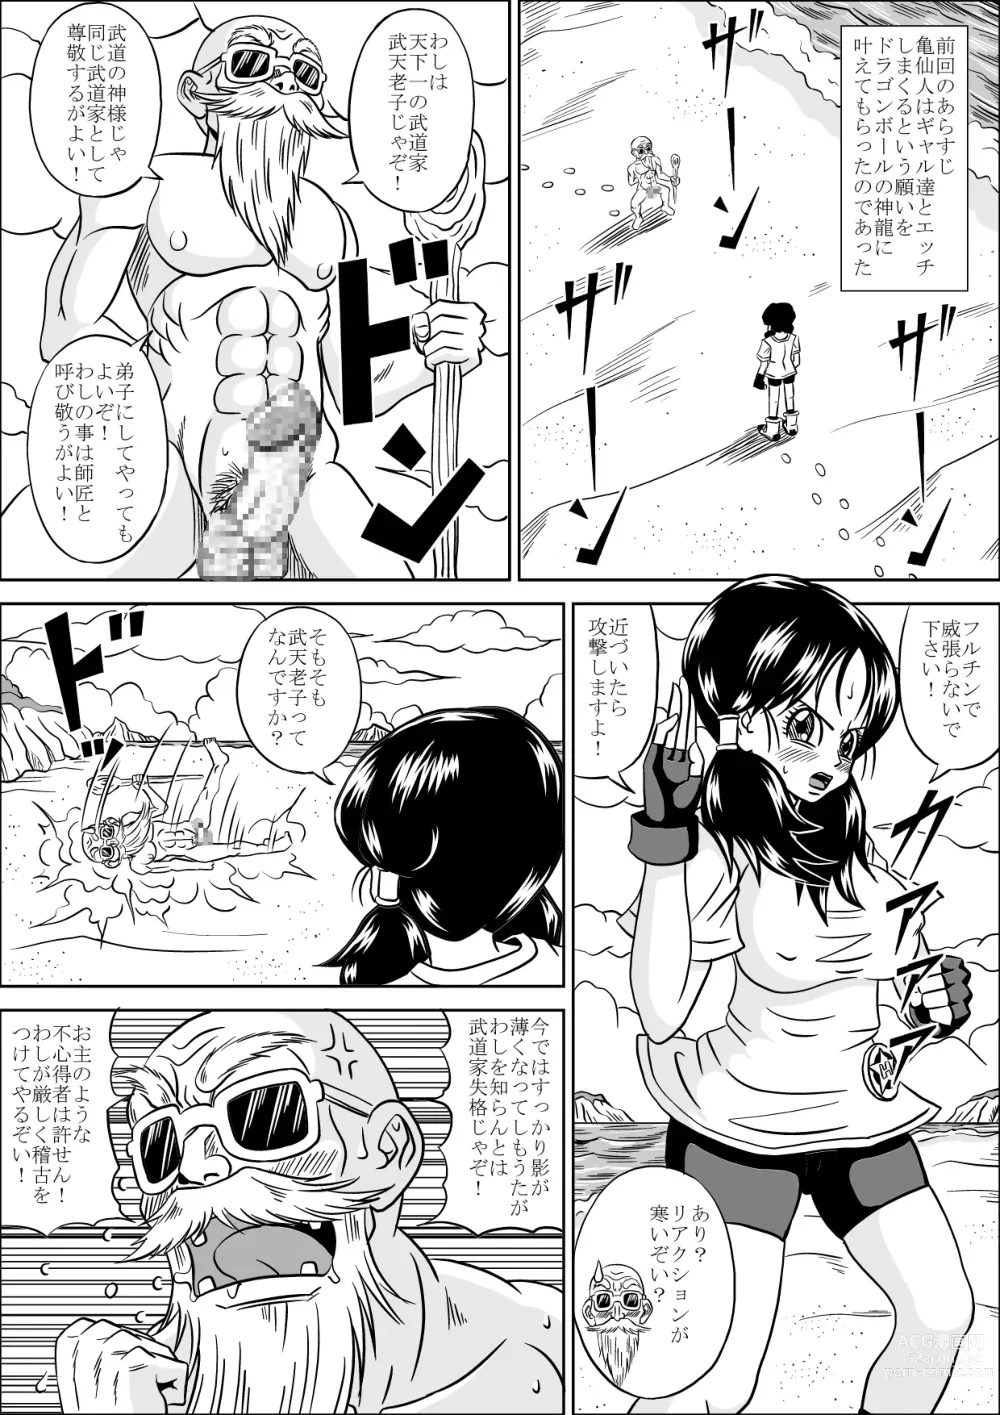 Page 7 of doujinshi Kame Sennin no Yabou II